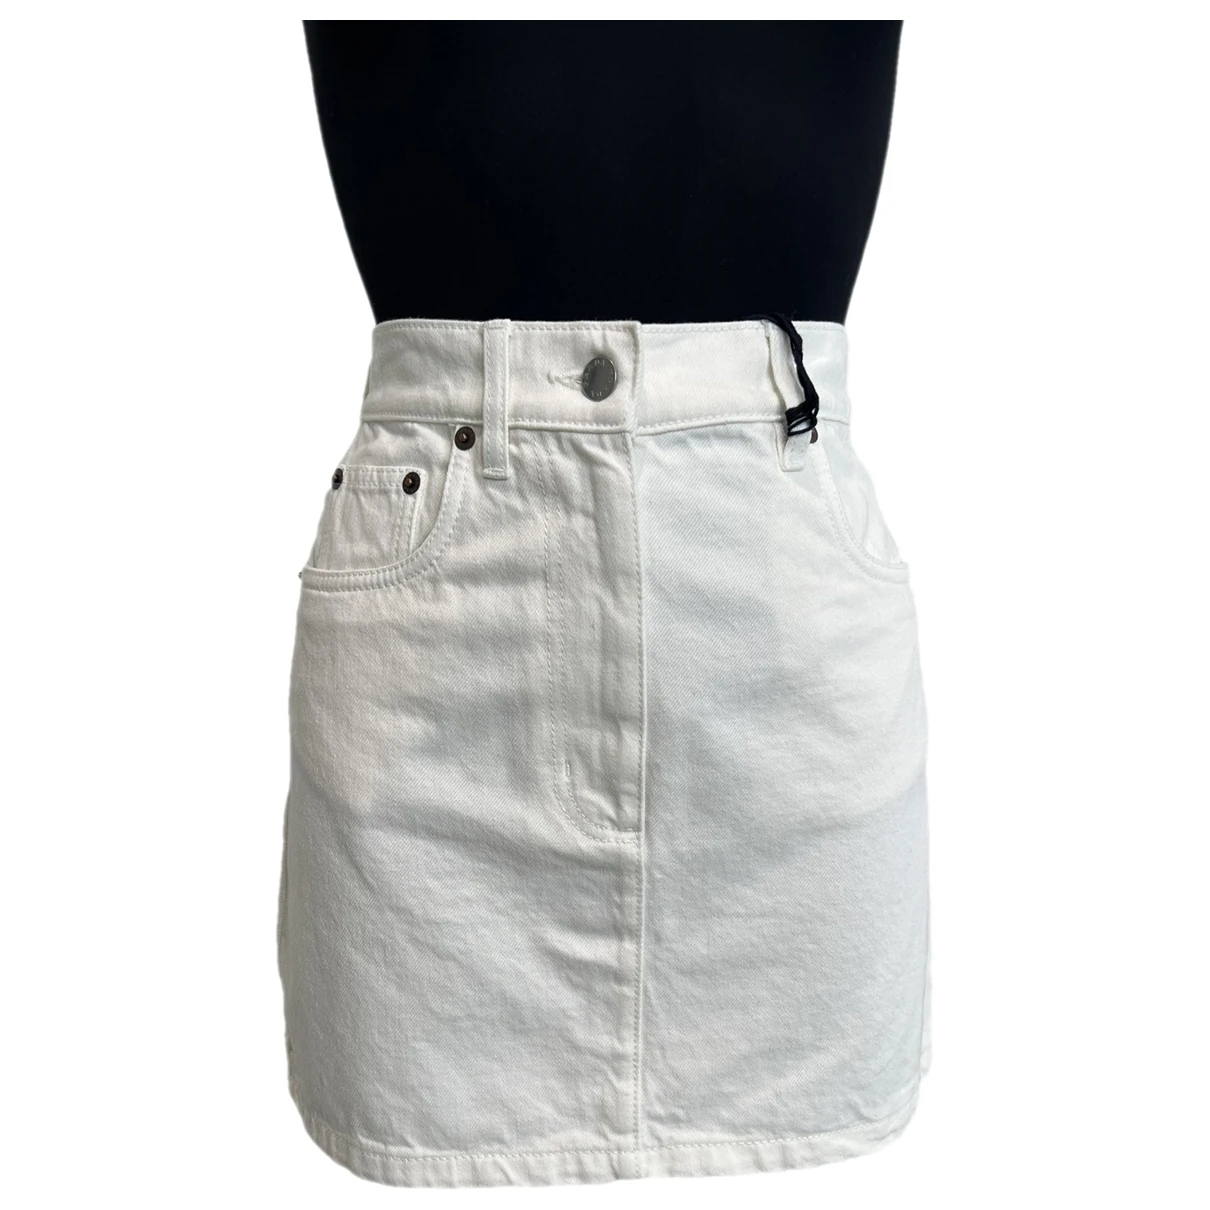 Pre-owned Prada Mini Skirt In White